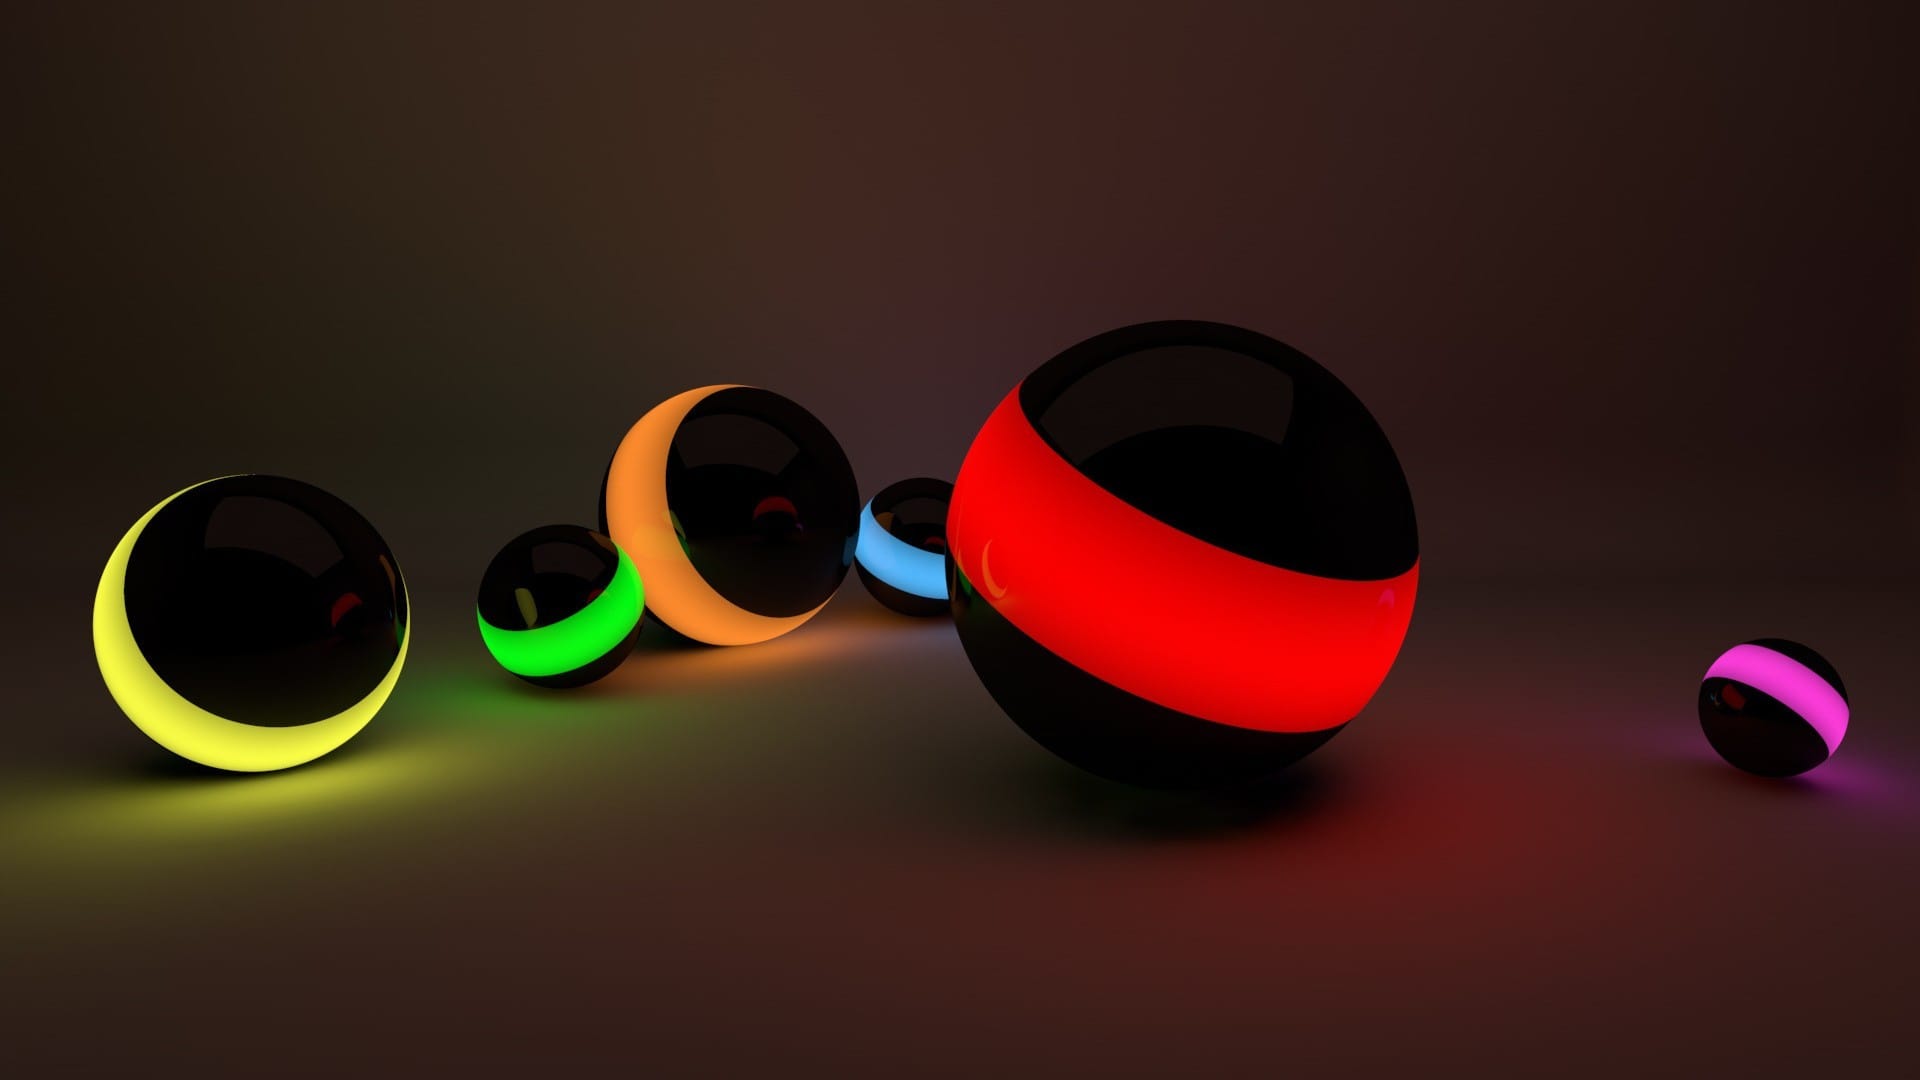 简约创意的3D发光圆球三难立体系列高清壁纸